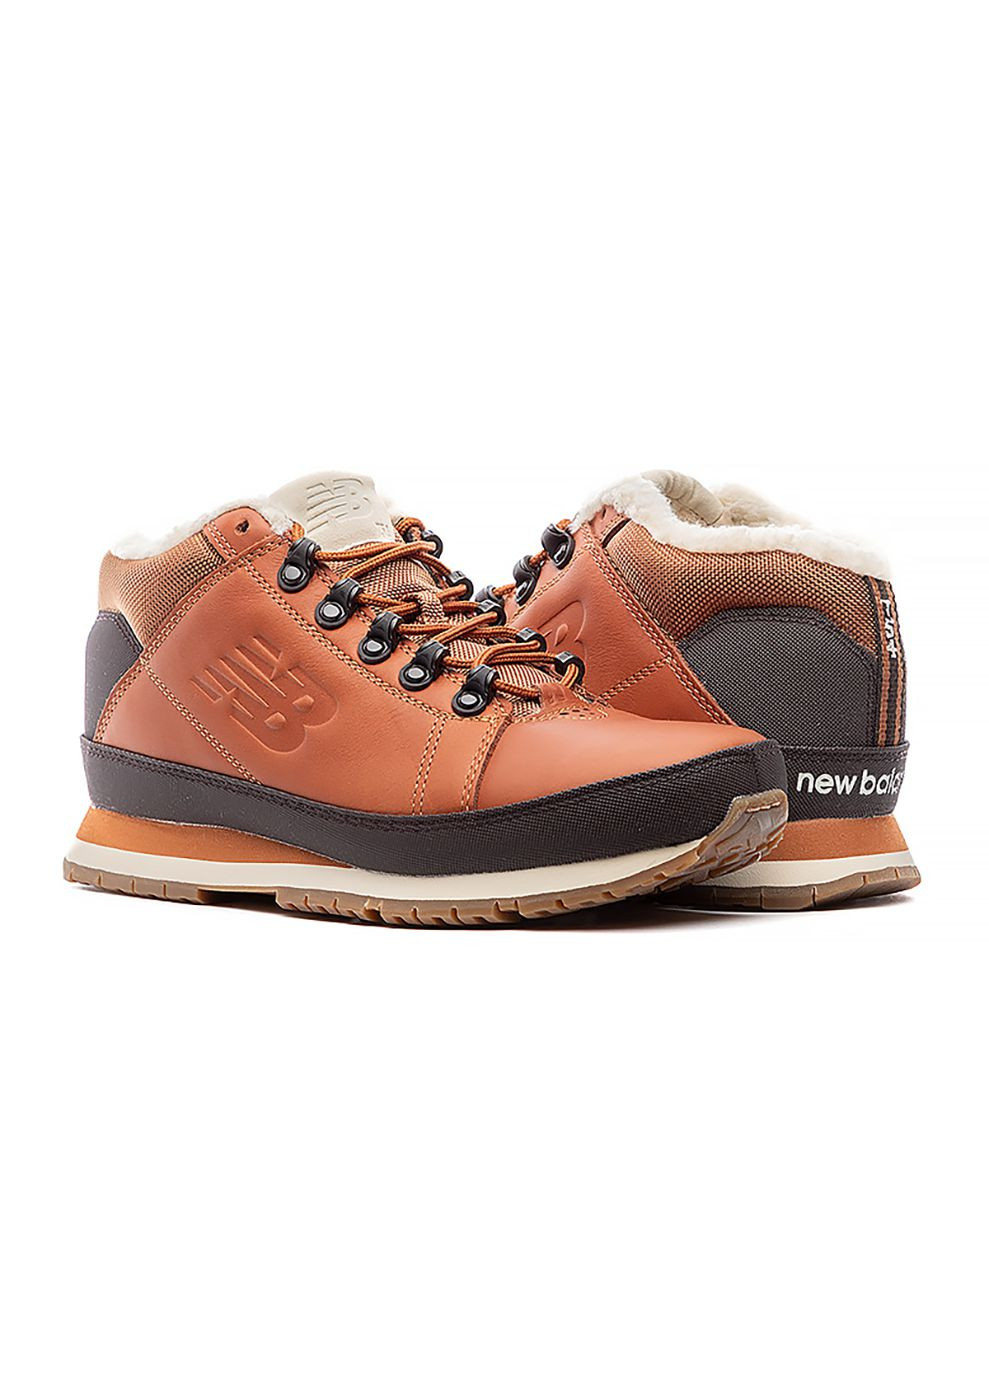 Коричневые осенние мужские ботинки 754 коричневый New Balance